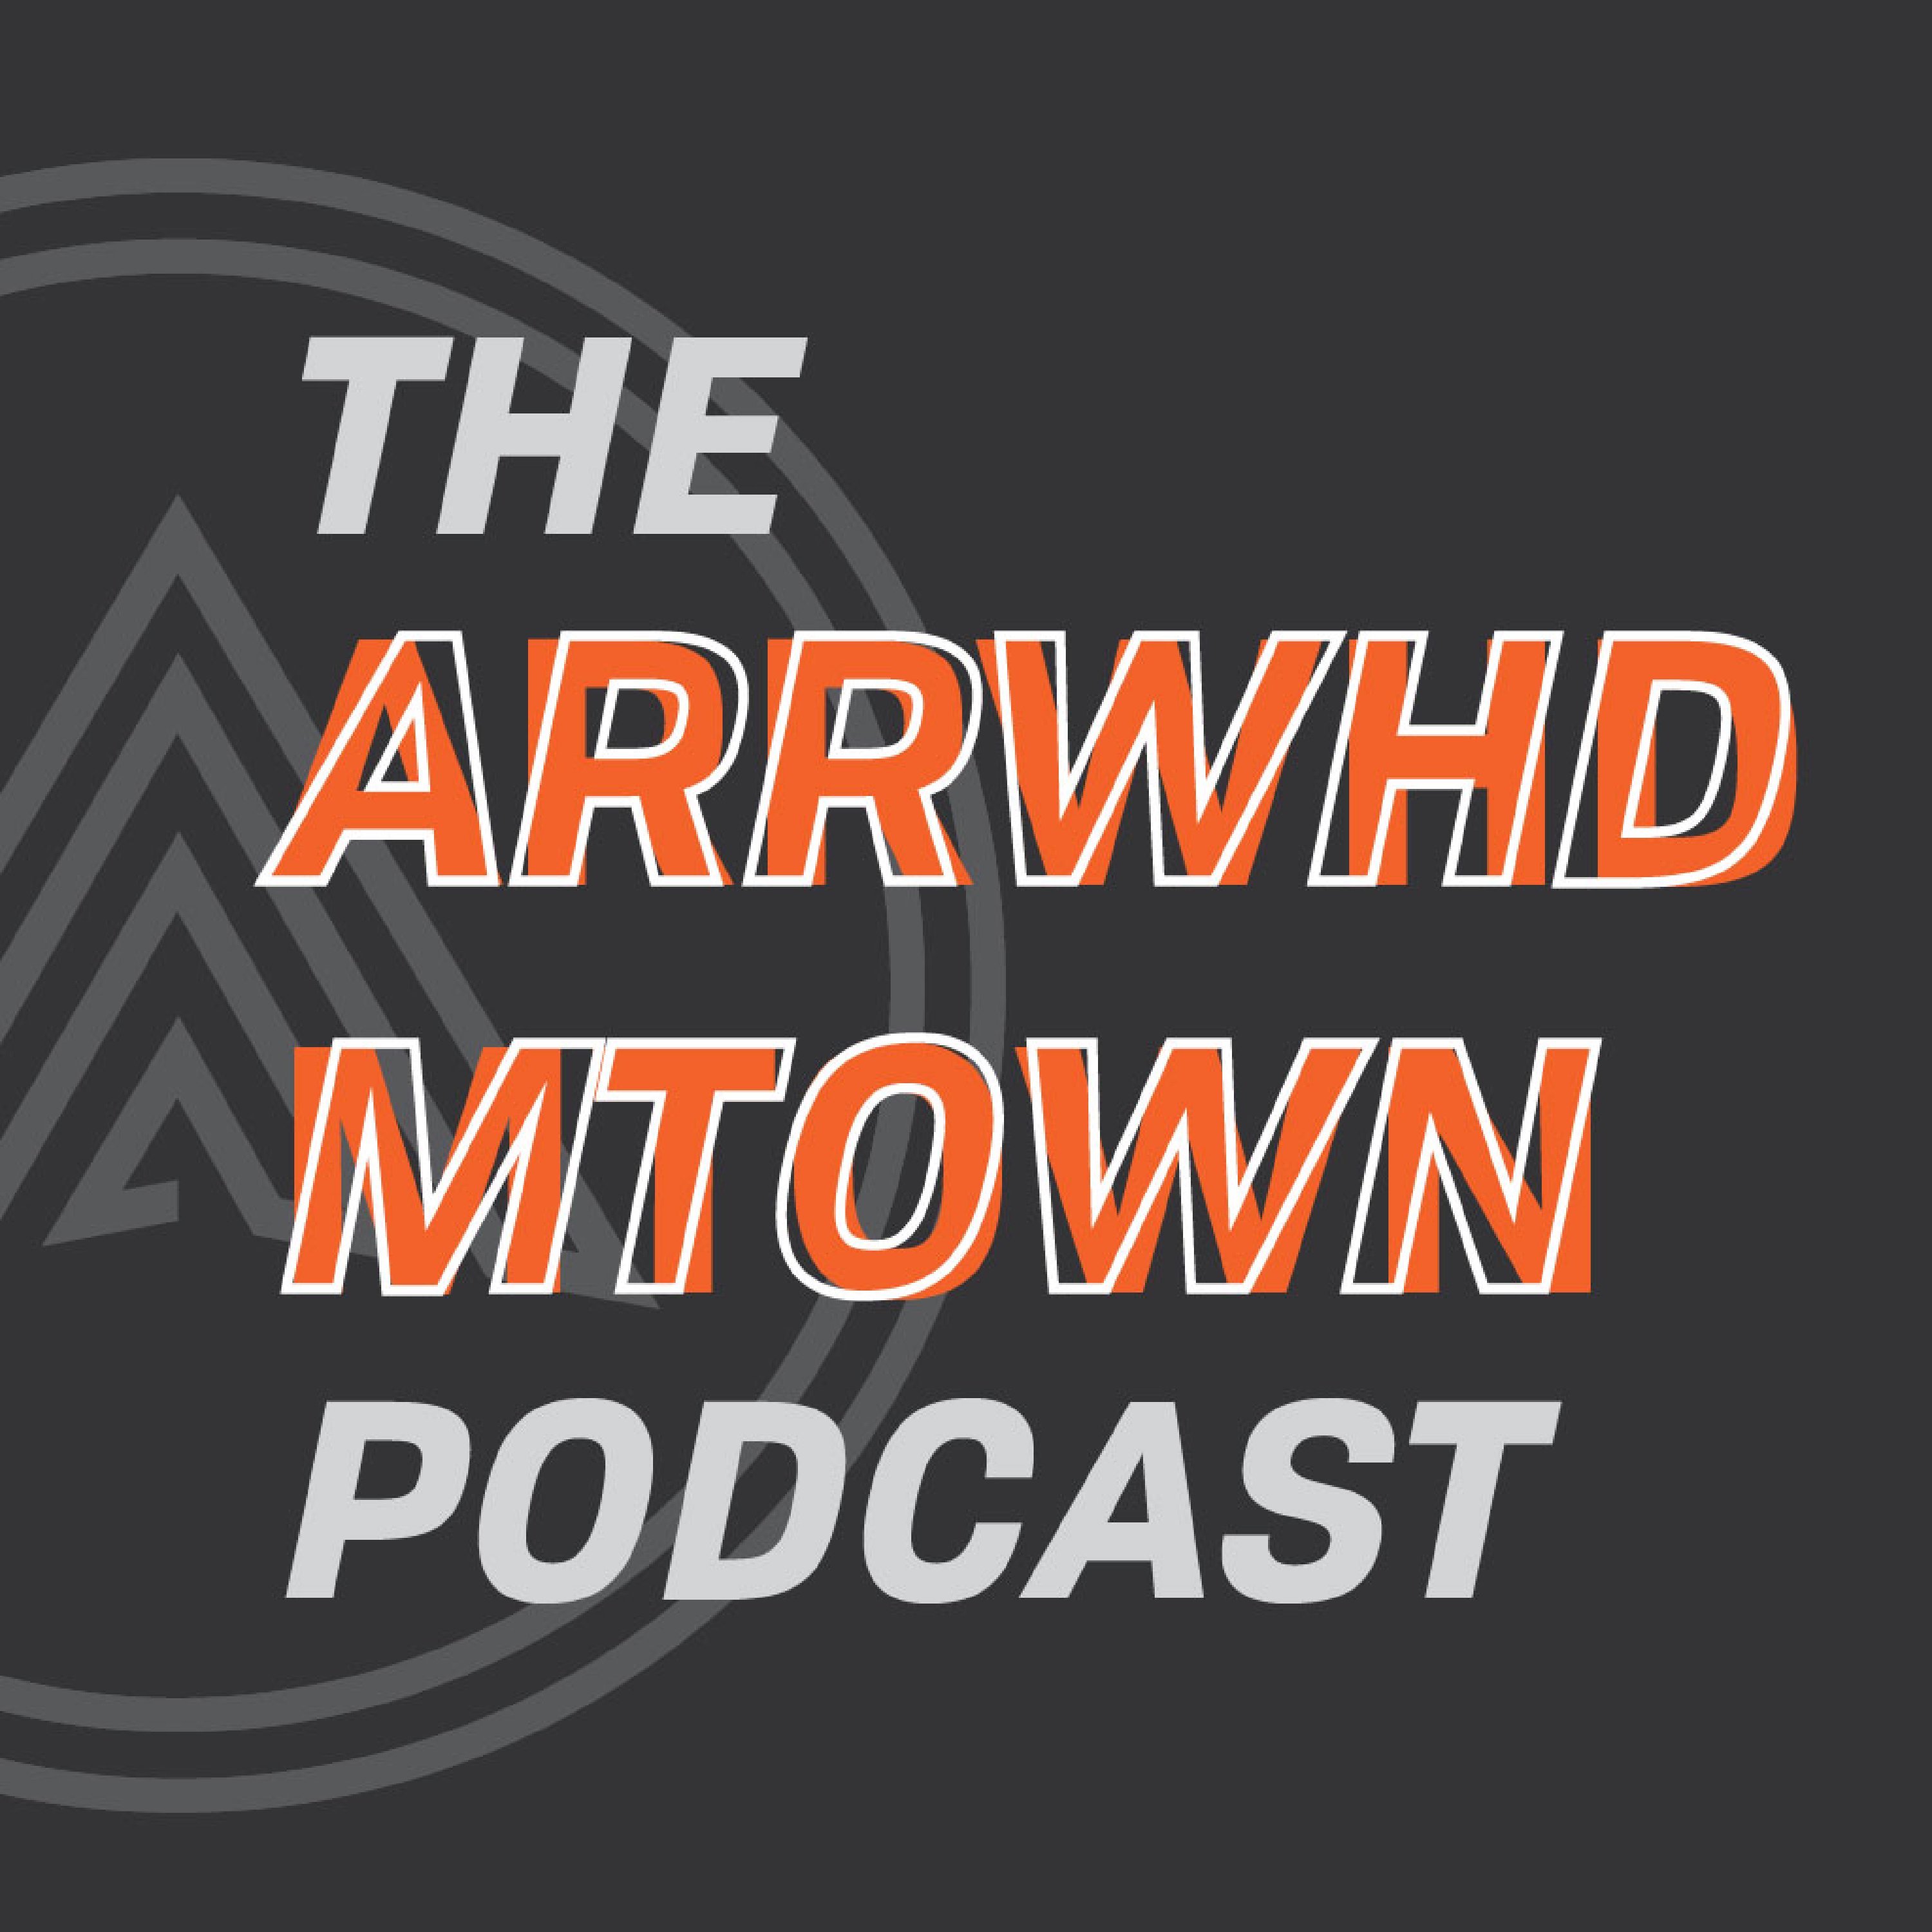 The Arrowhead Morristown Podcast